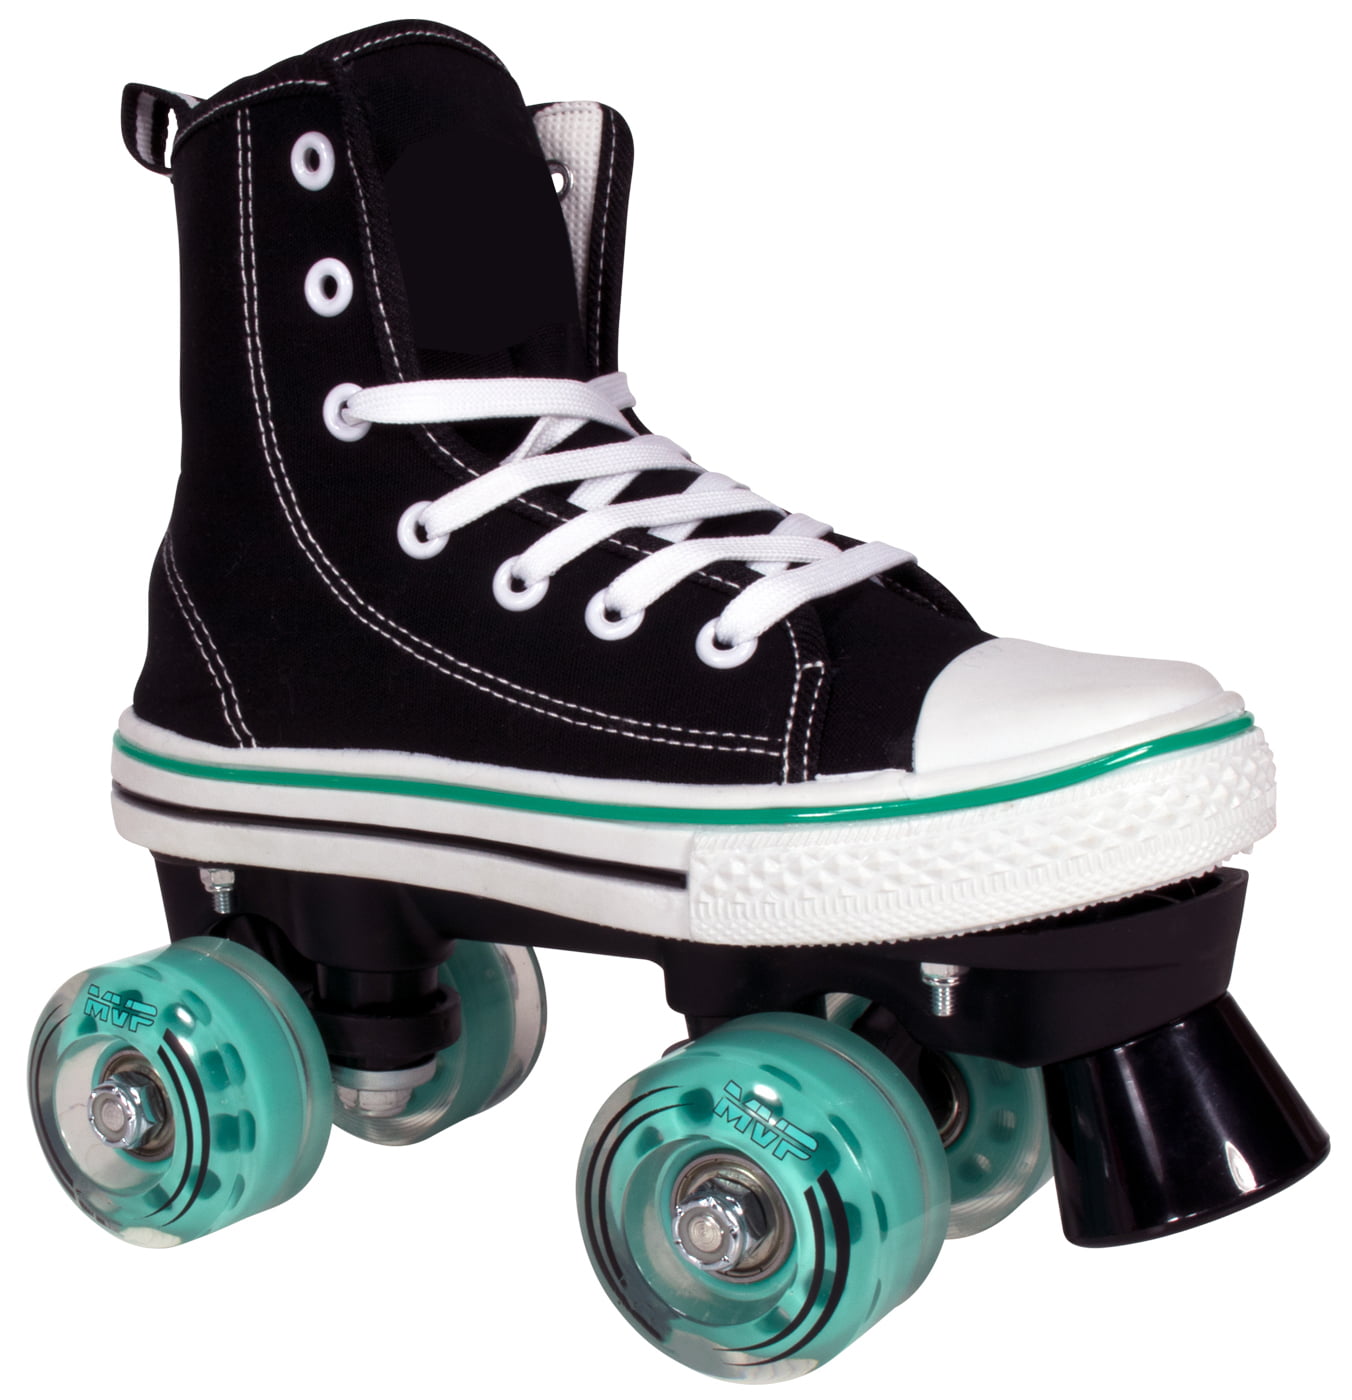 mezelf belediging Verpletteren Lenexa Roller Skates for Girls and Boys MVP Kid's Unisex Quad Roller Skates  with High Top Shoe Style for Indoor/Outdoo - Walmart.com